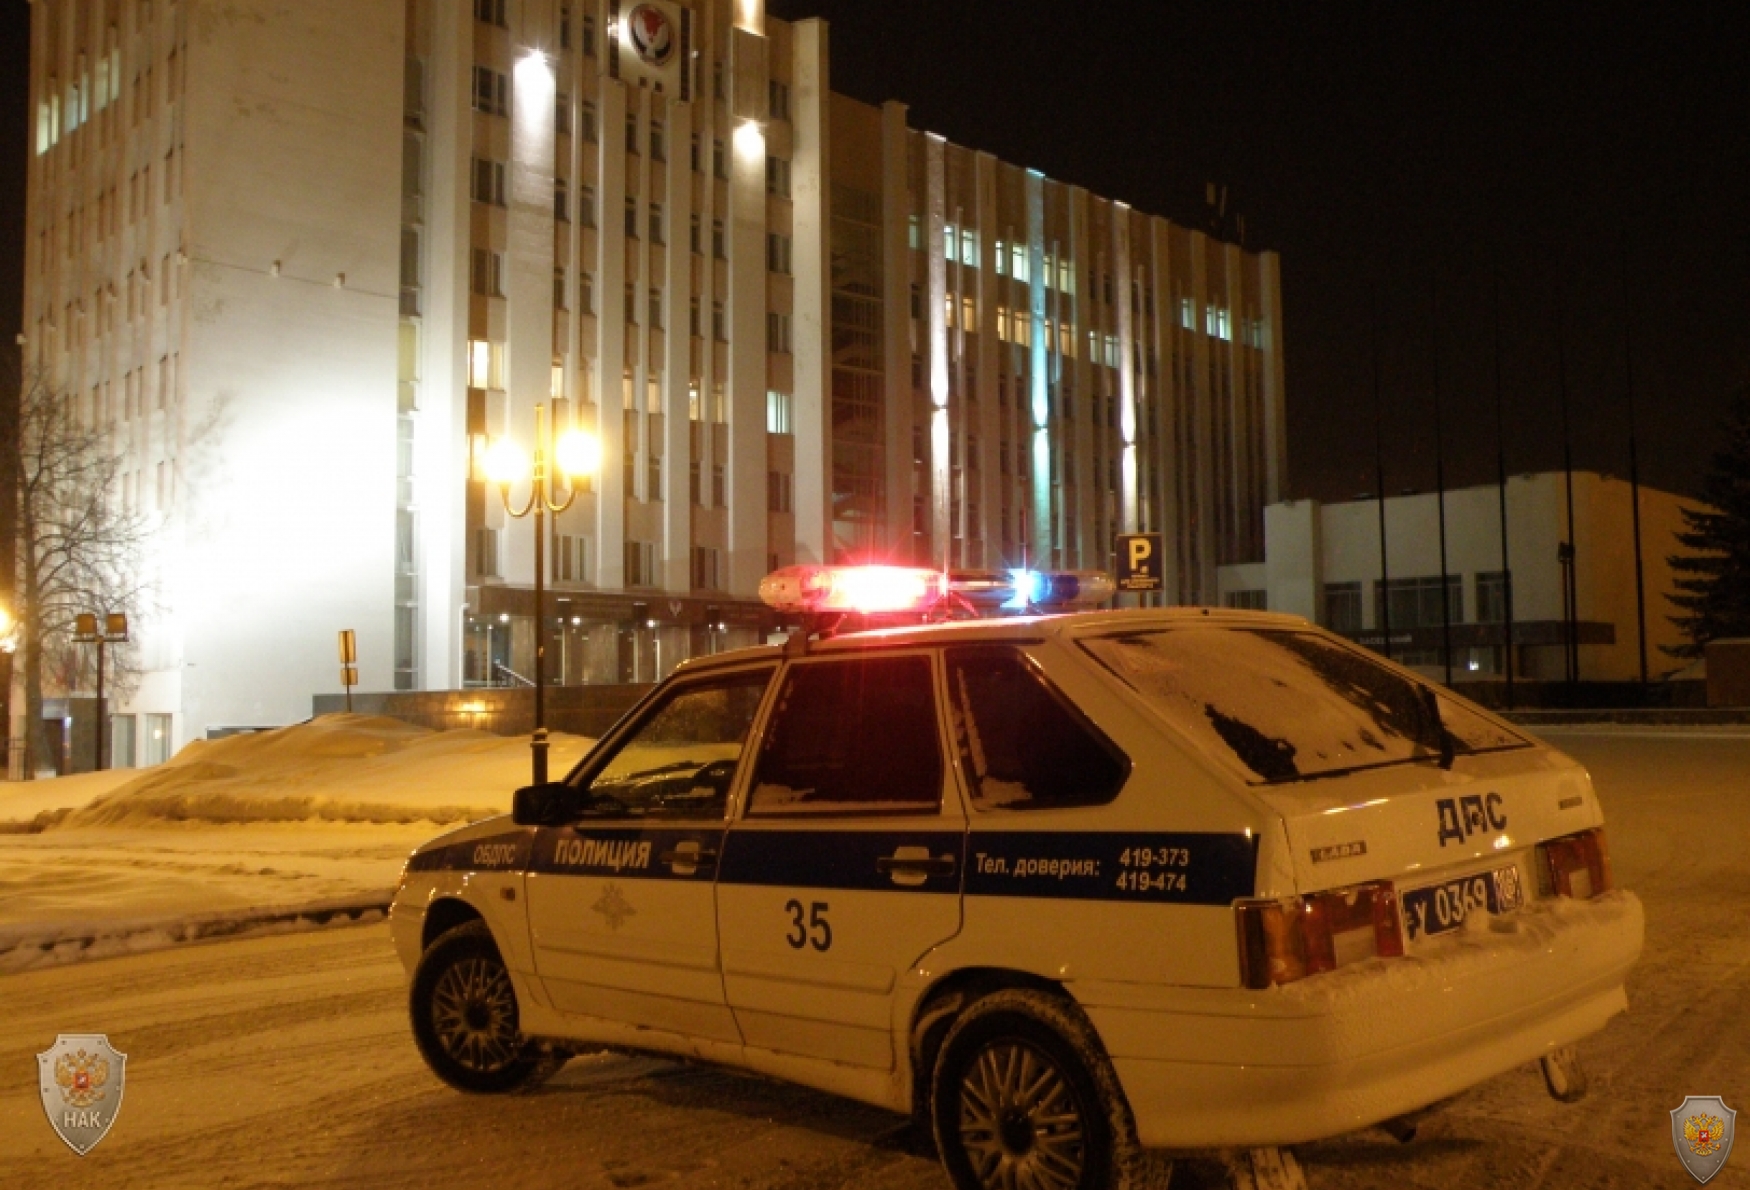 Оперативным штабом в Удмуртской Республике проведено антитеррористическое учение в гостинице «Amaks Центральная Ижевск»